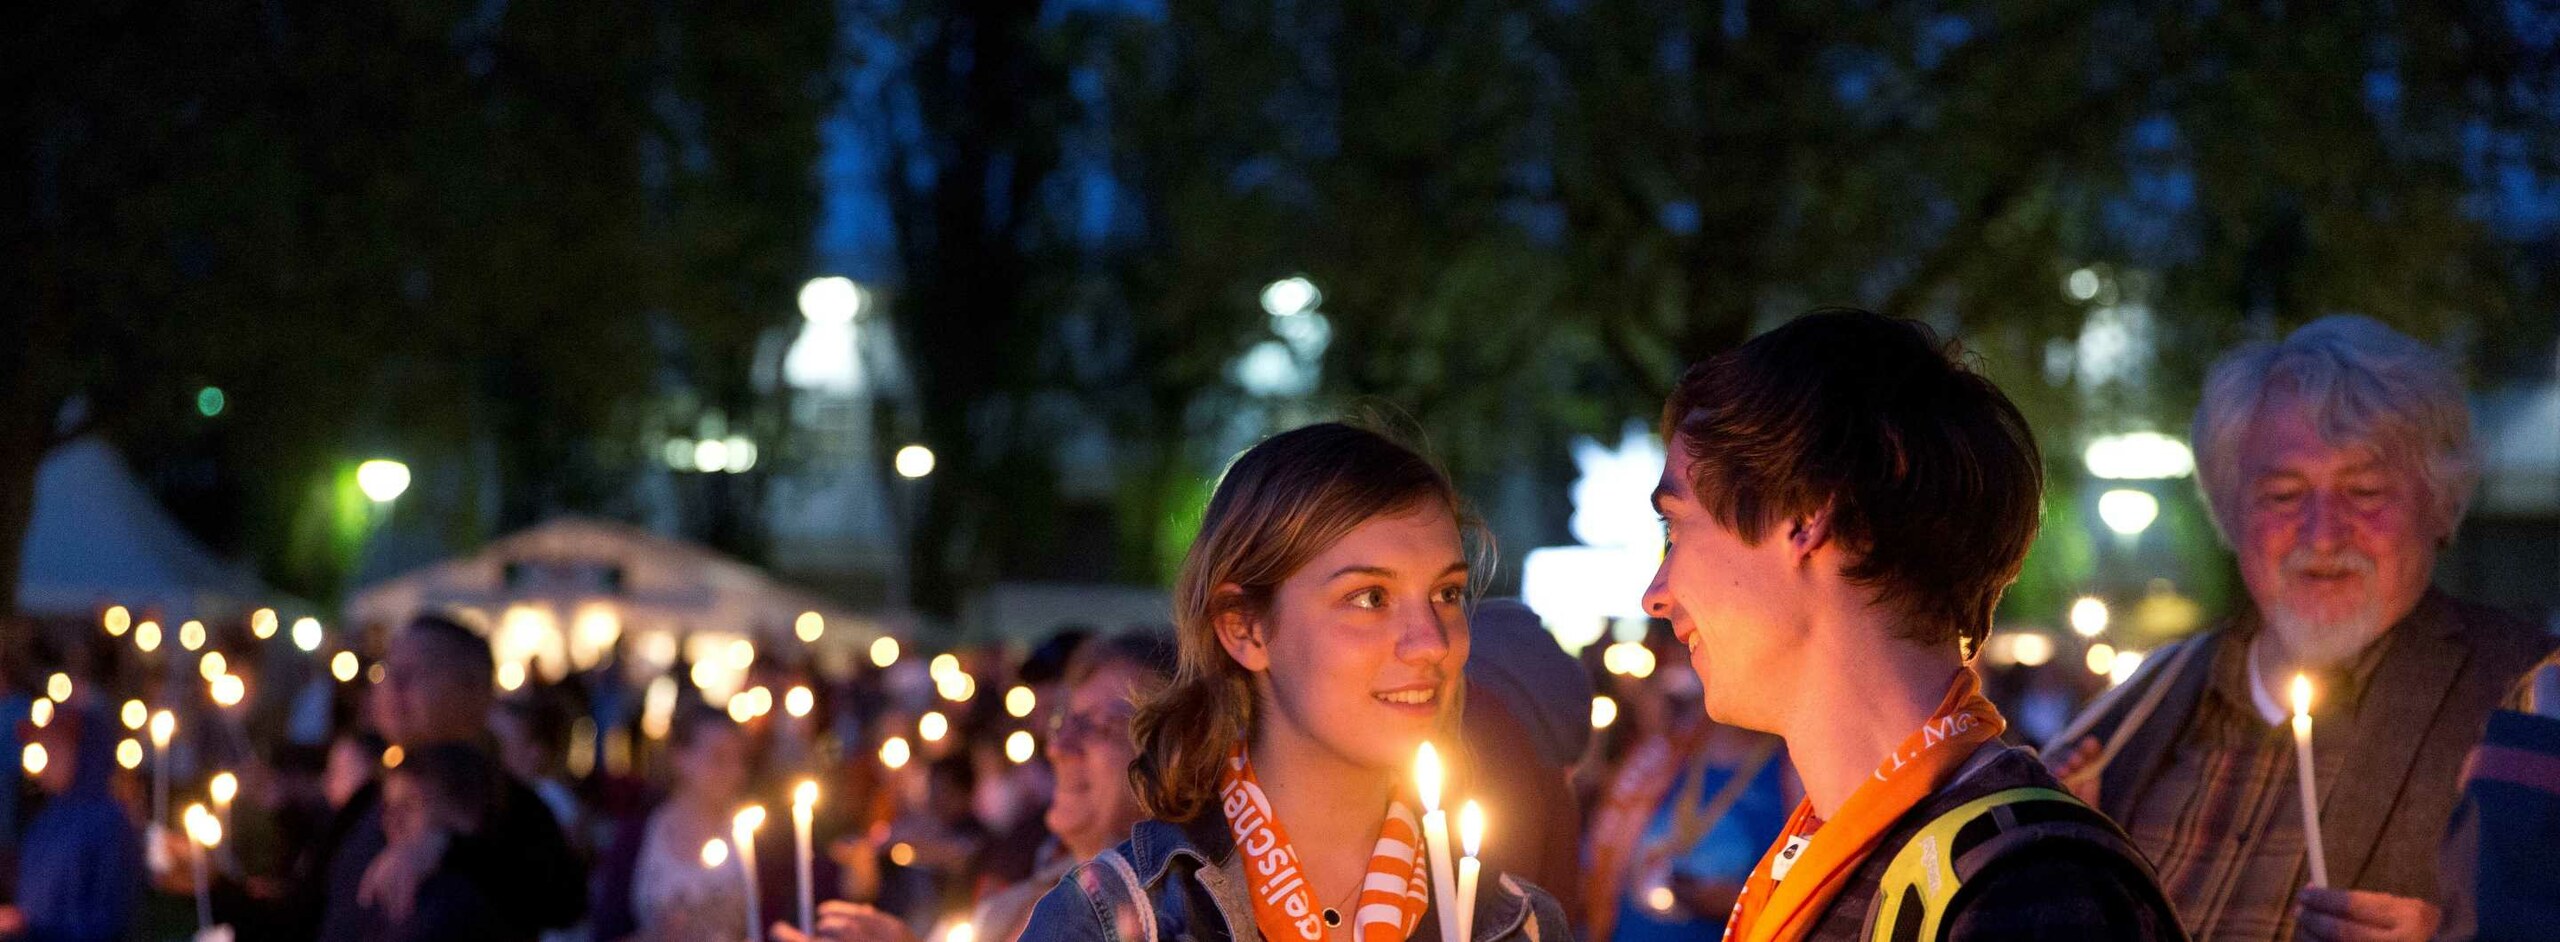 Ein junges Paar schaut sich lächelnd in die Augen während sie die weißen Kerzen zum Abendsegen angezündet zwischen sich halten